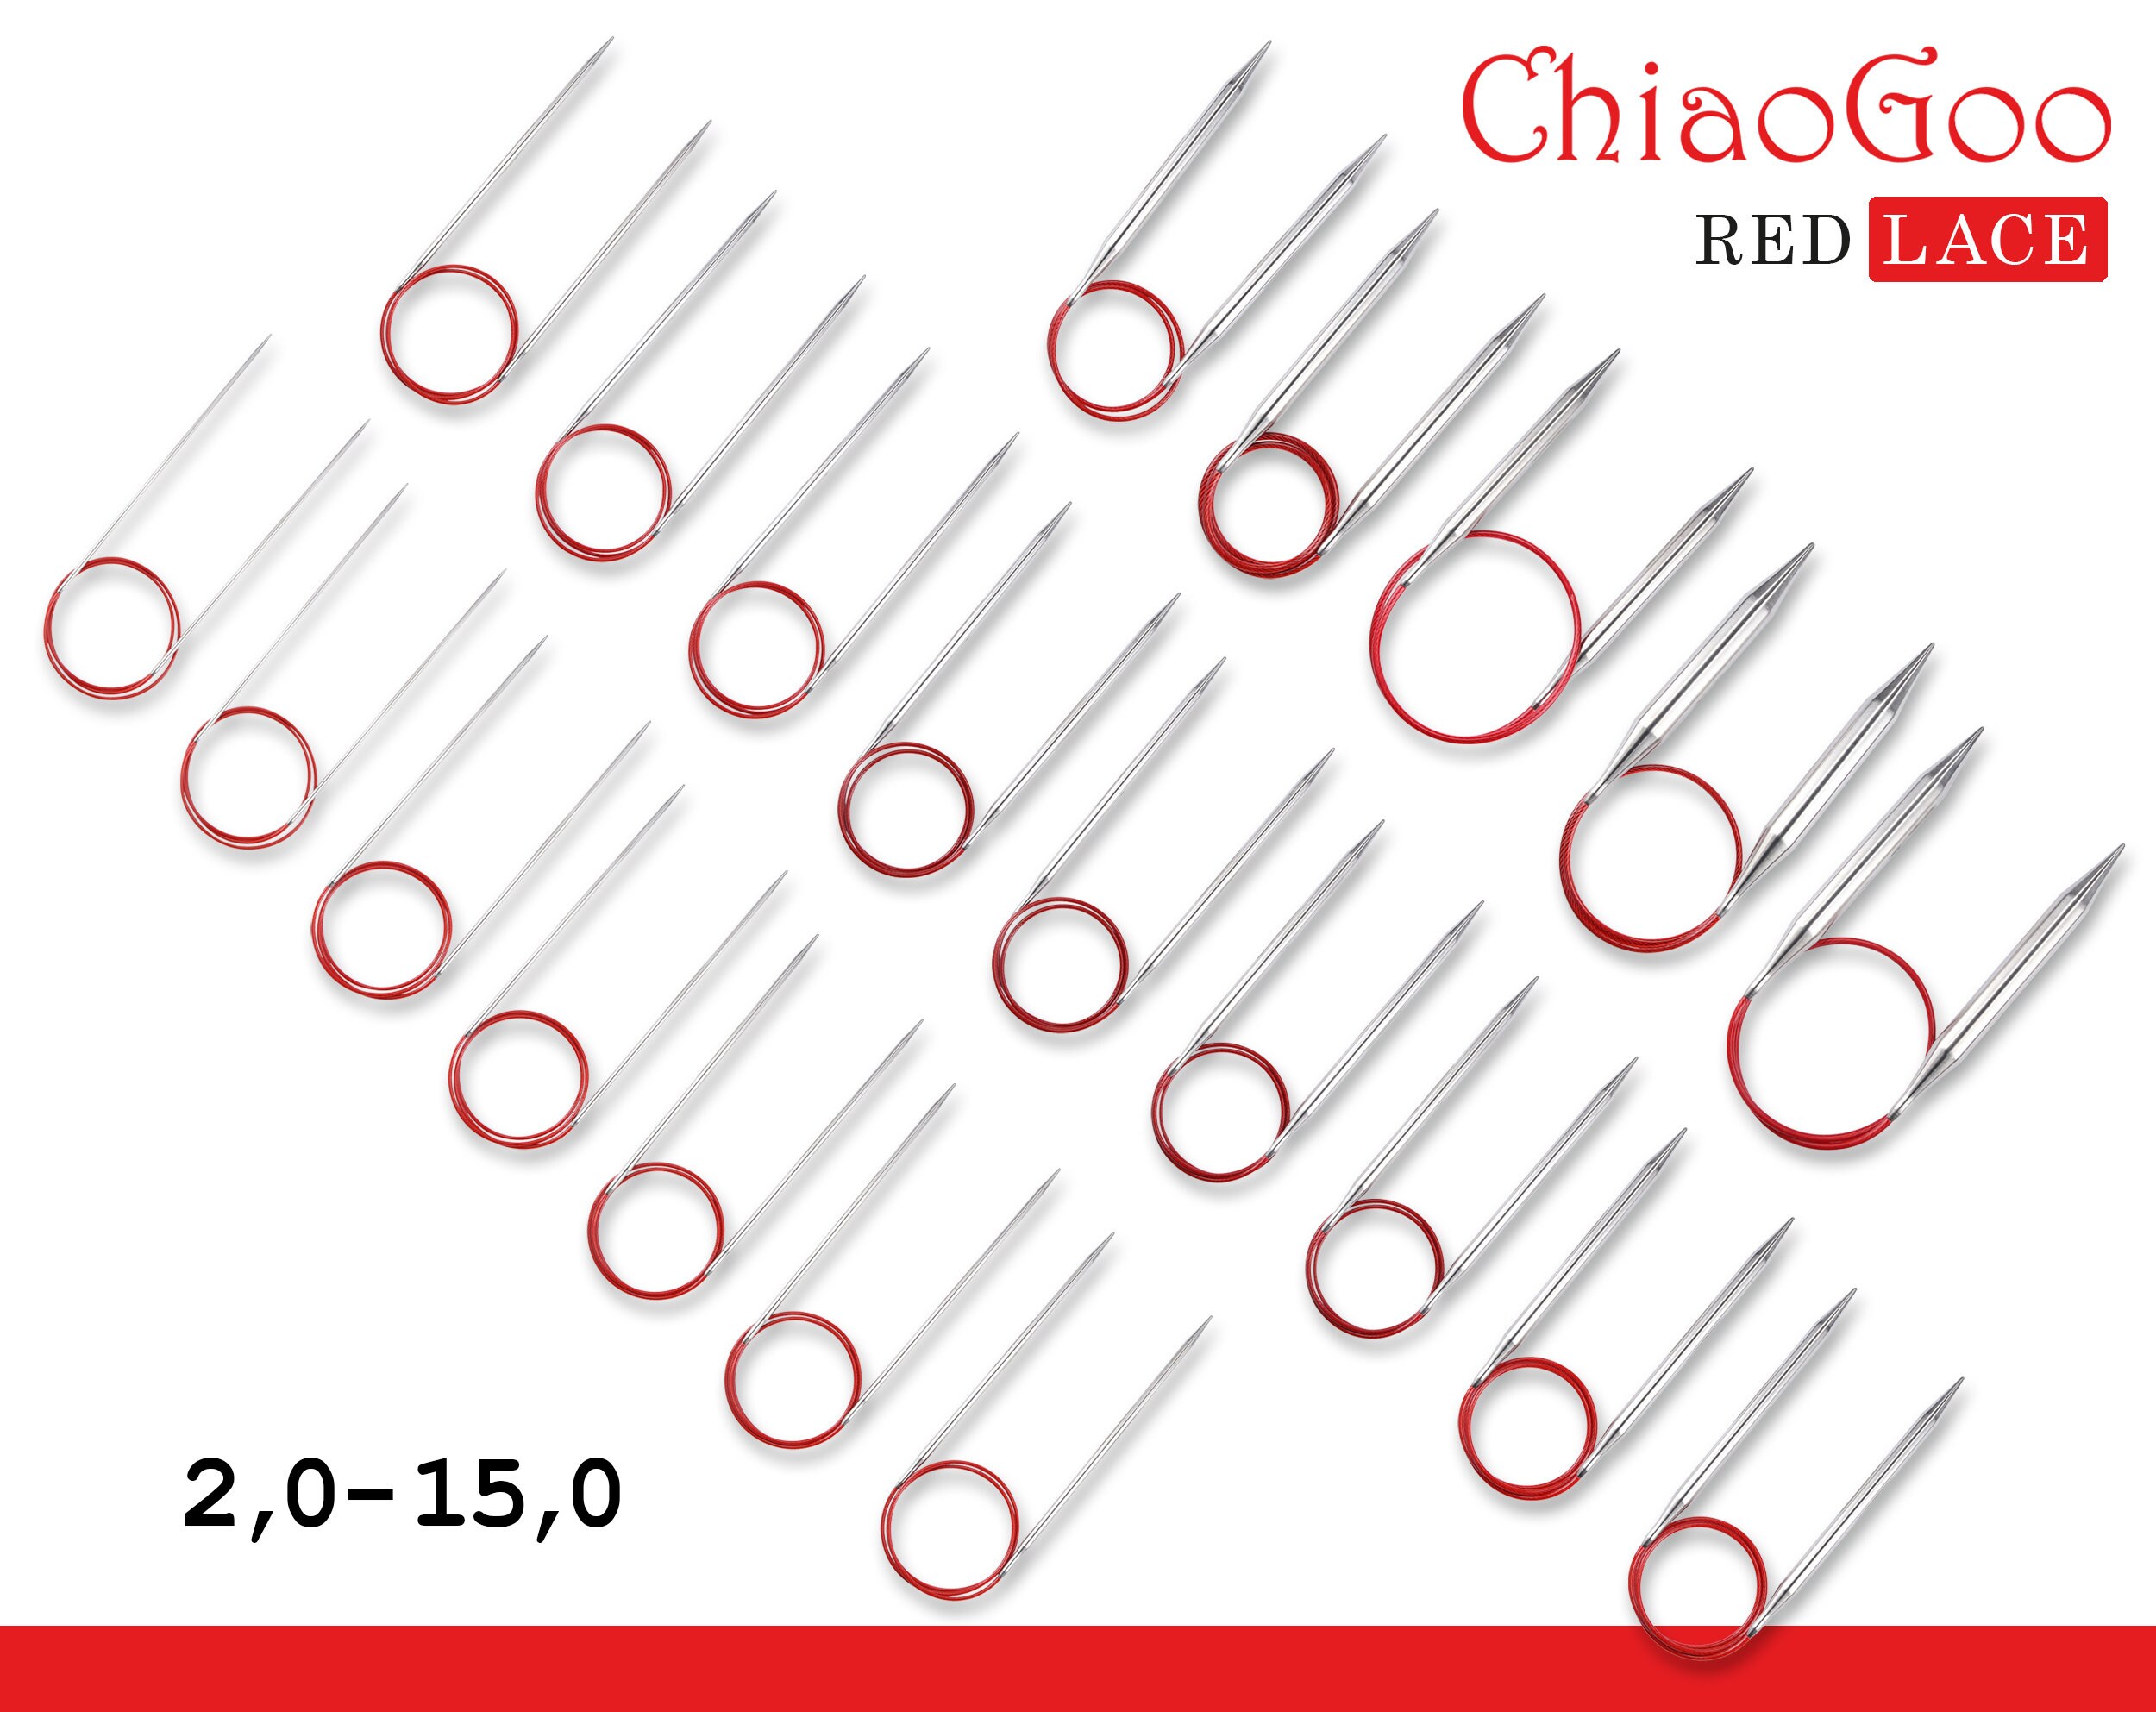 ChiaoGoo SS Red Lace 24 Circular Knitting Needles at The Endless